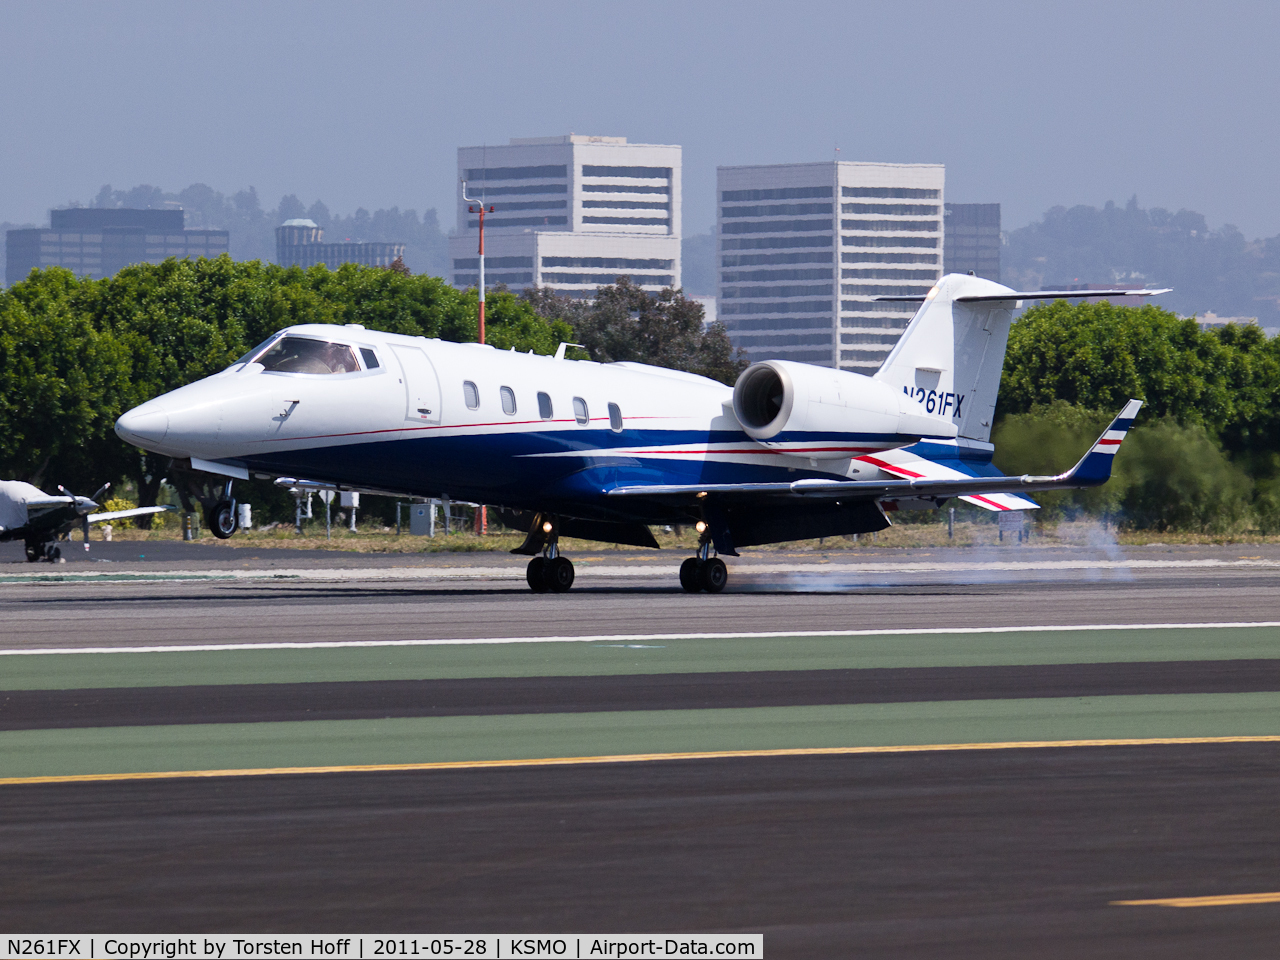 N261FX, 2007 Learjet 60 C/N 319, N261FX arriving on RWY 21